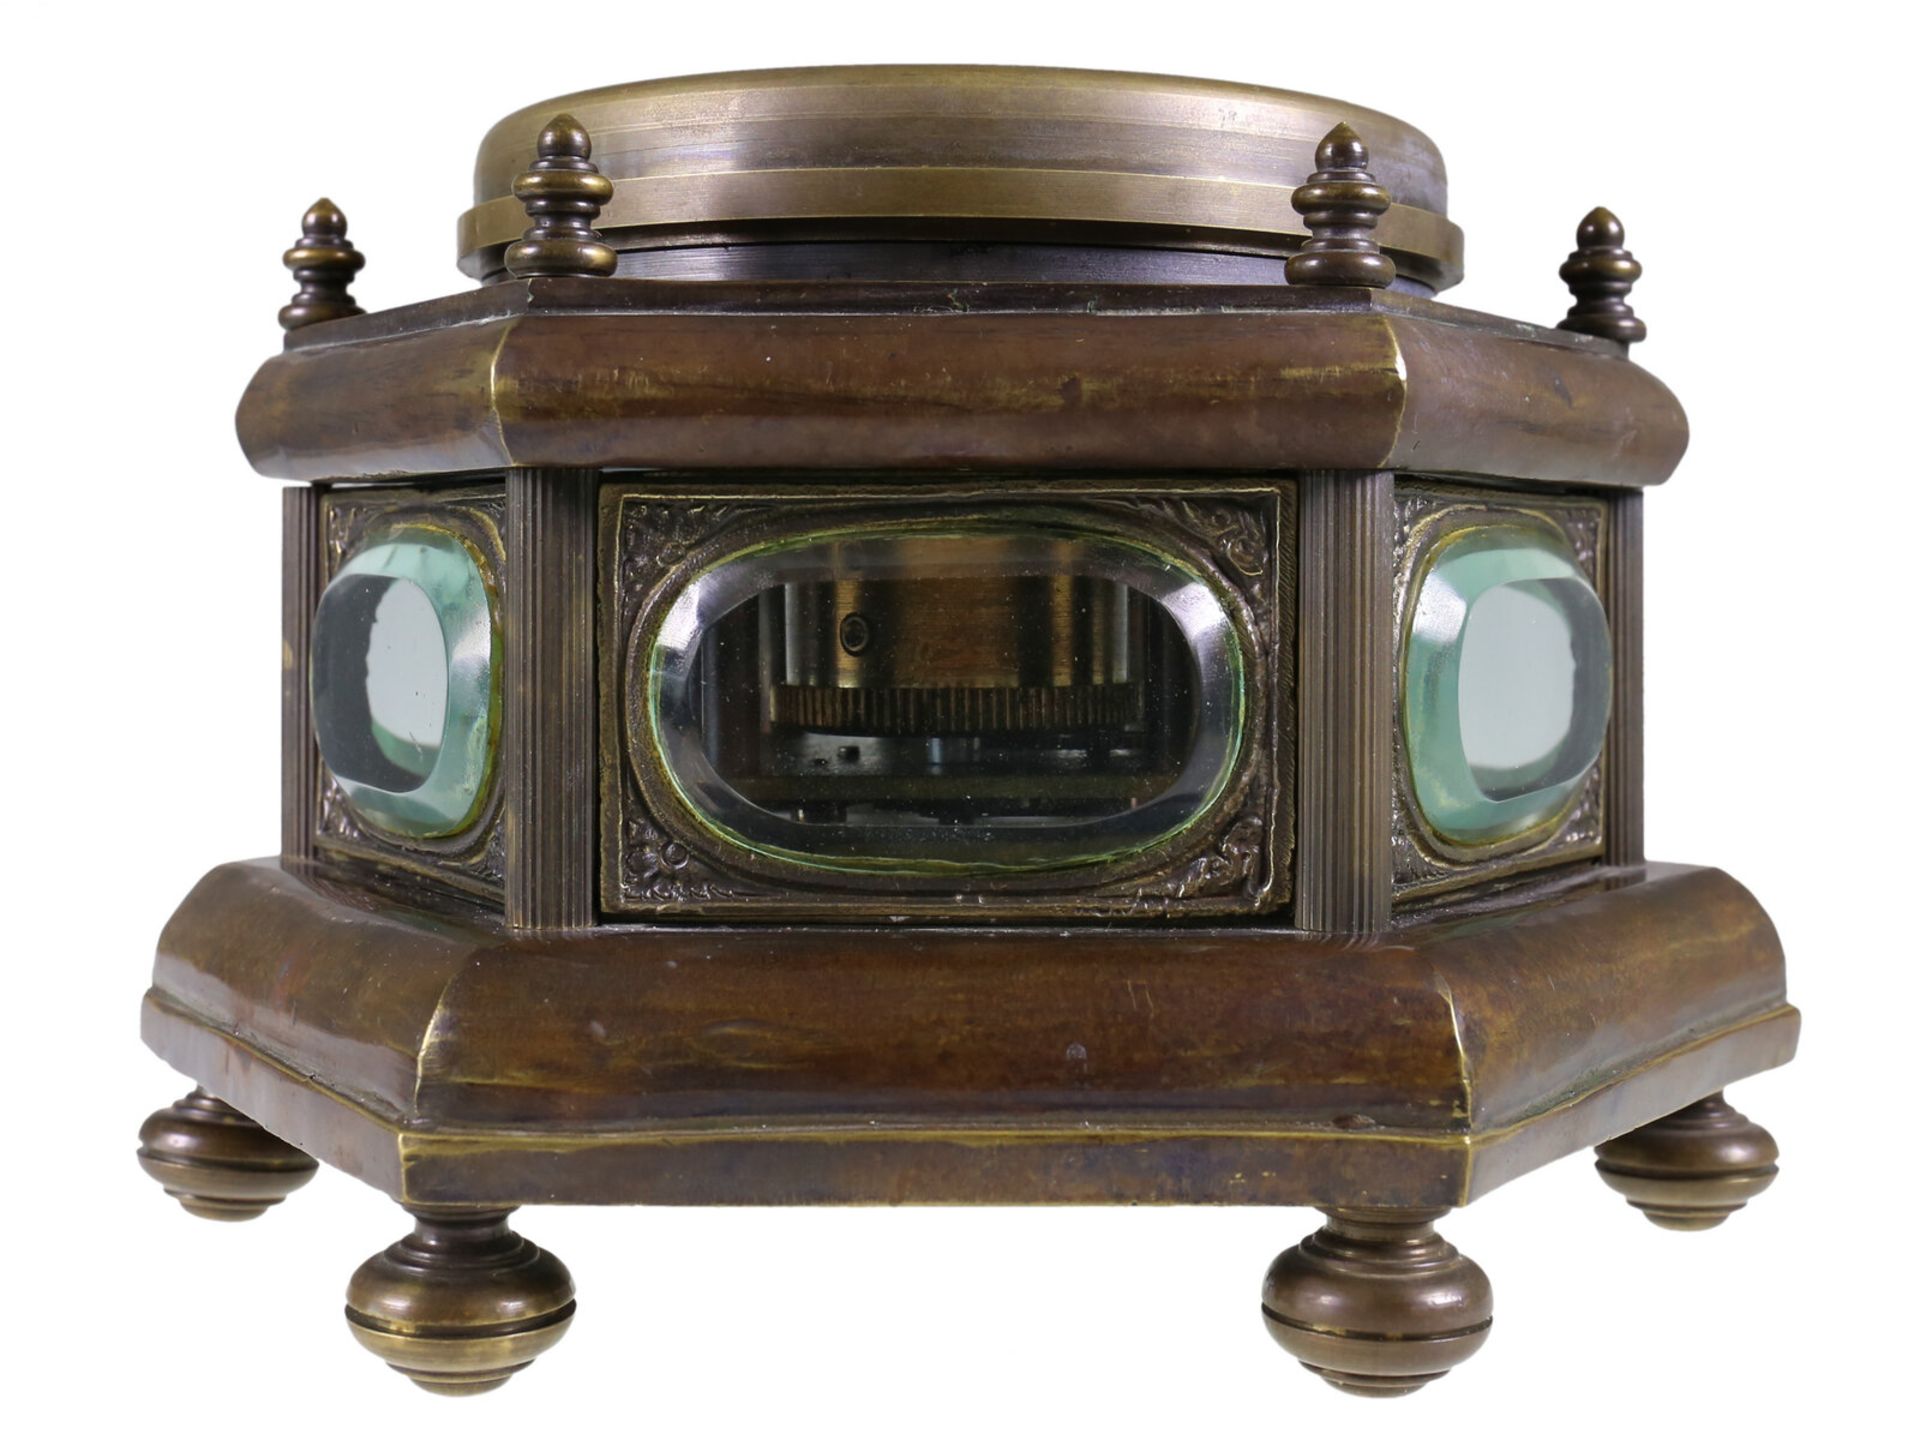 Tischuhr: ungewöhnliche 6-eckige Horizontal-Tischuhr, um 1900 - Bild 4 aus 4